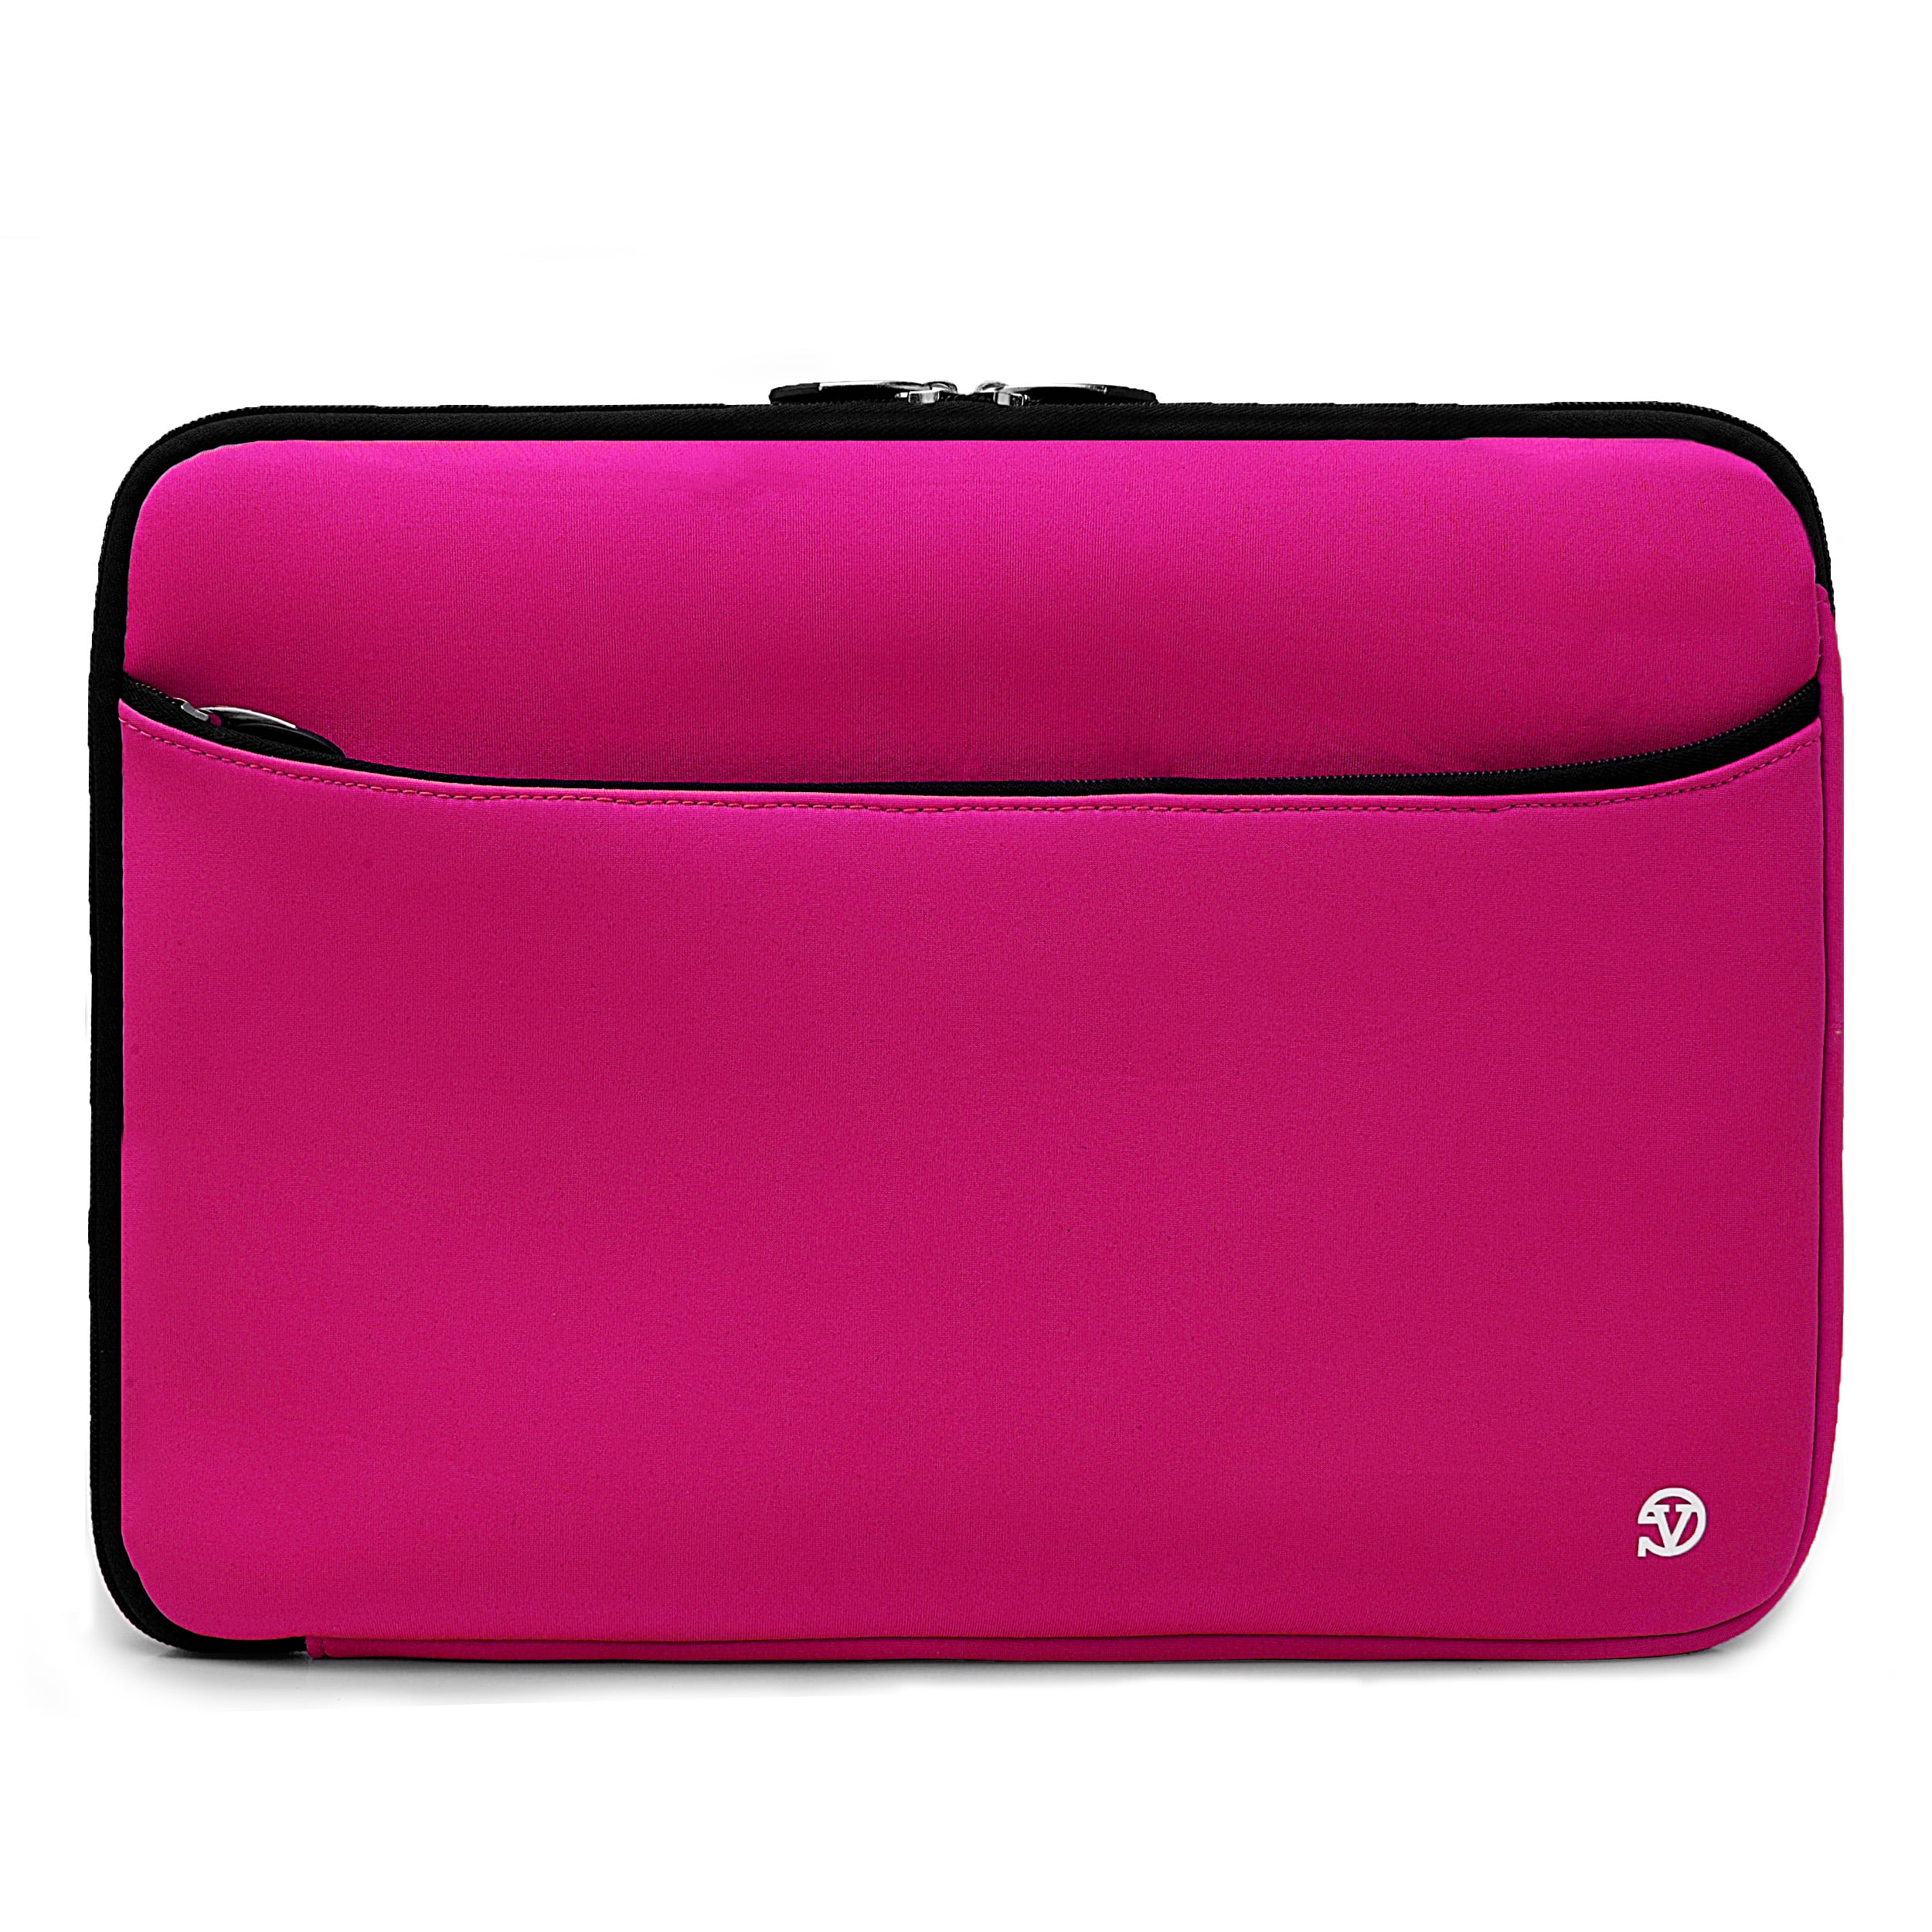 ijzer Afleiden Onbekwaamheid VANGODDY Neoprene Laptop / Notebook / Ultrabook Slim Compact Carrying Sleeve  fits up to 15, 15.6 inch Devices [Assorted Colors] - Walmart.com